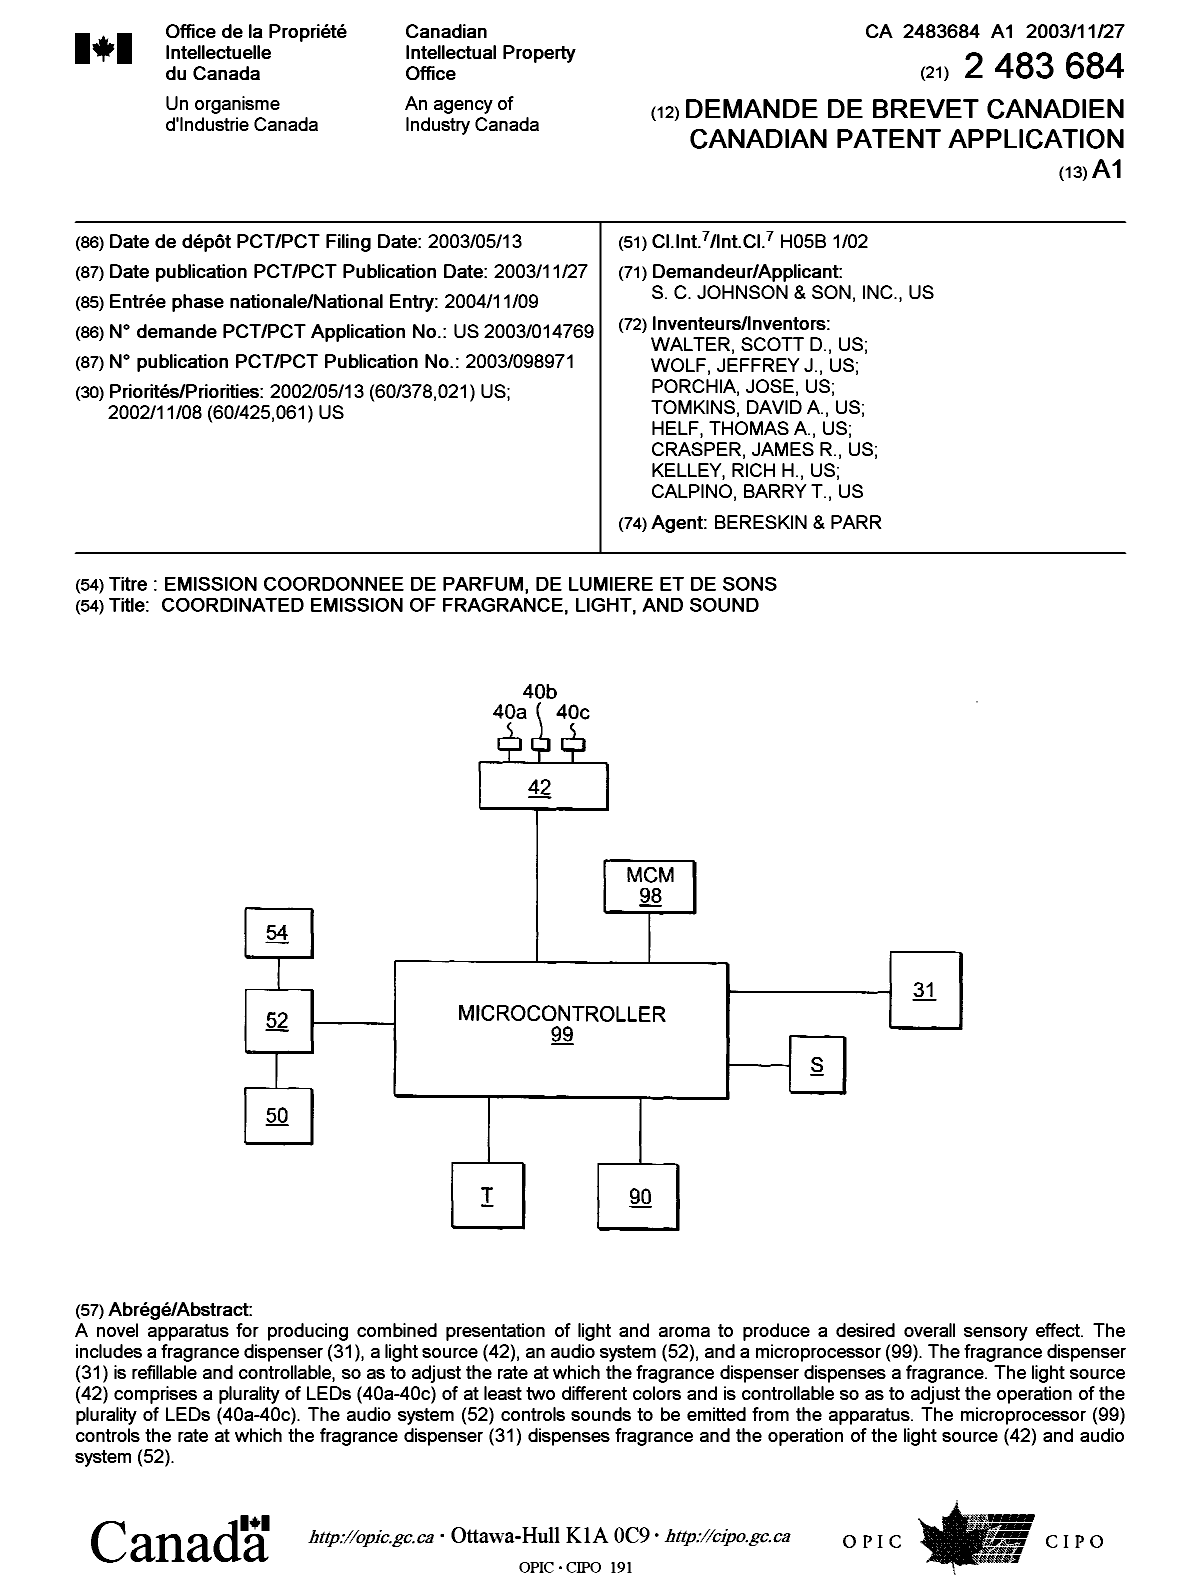 Document de brevet canadien 2483684. Page couverture 20050124. Image 1 de 1